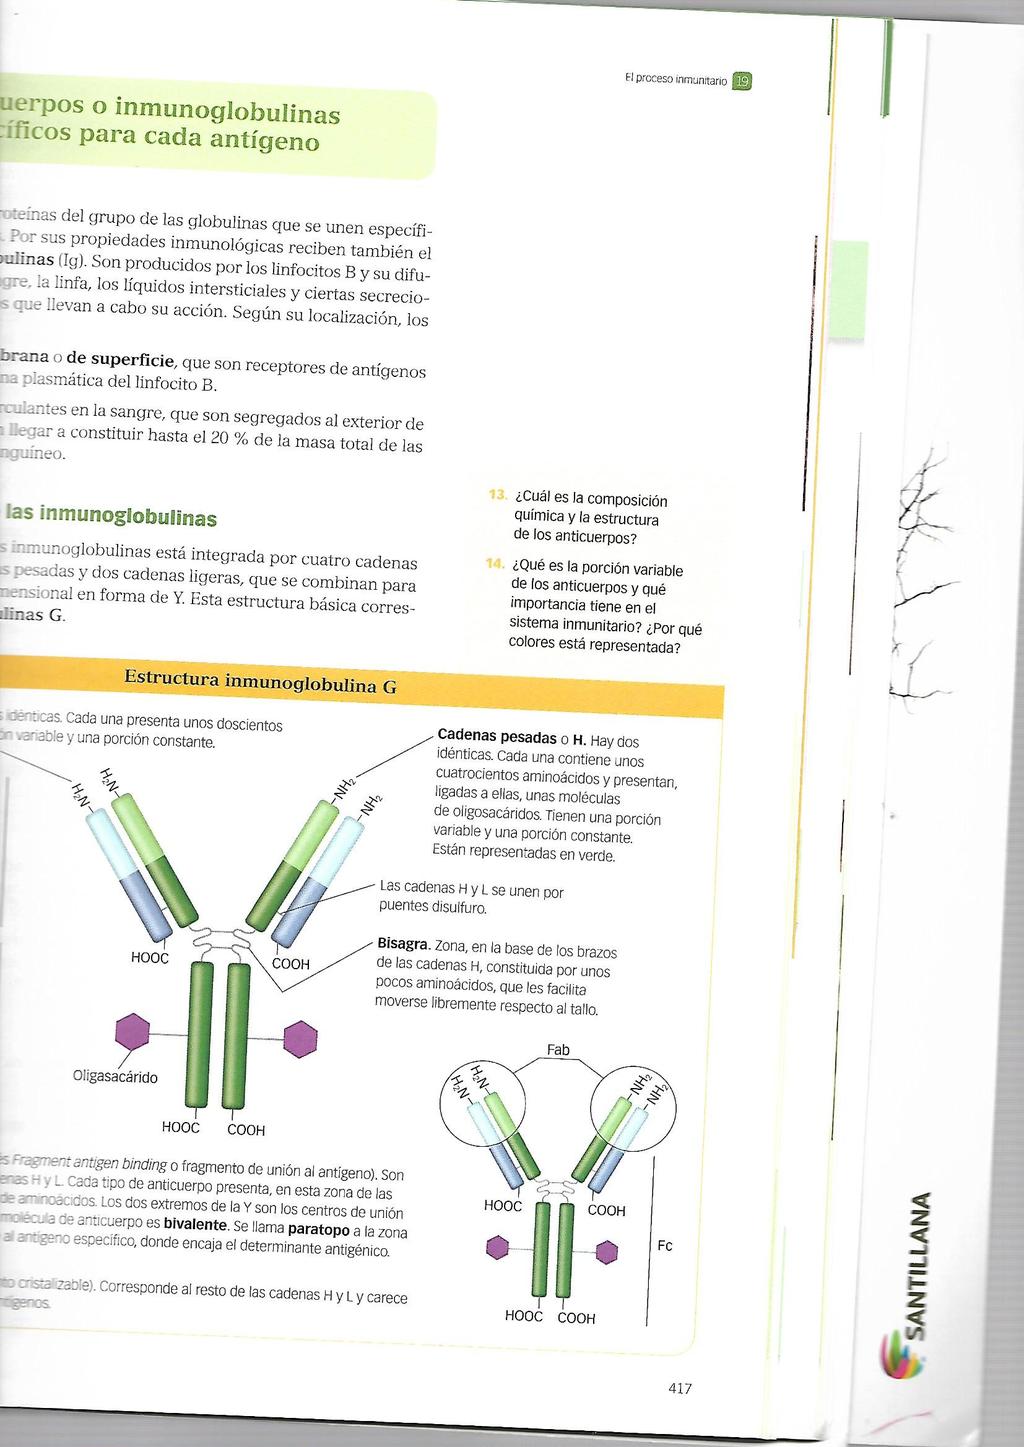 Explica el concepto de ADN recombinante y señala en qué técnicas propias de la biotecnología se utiliza. 3.6.